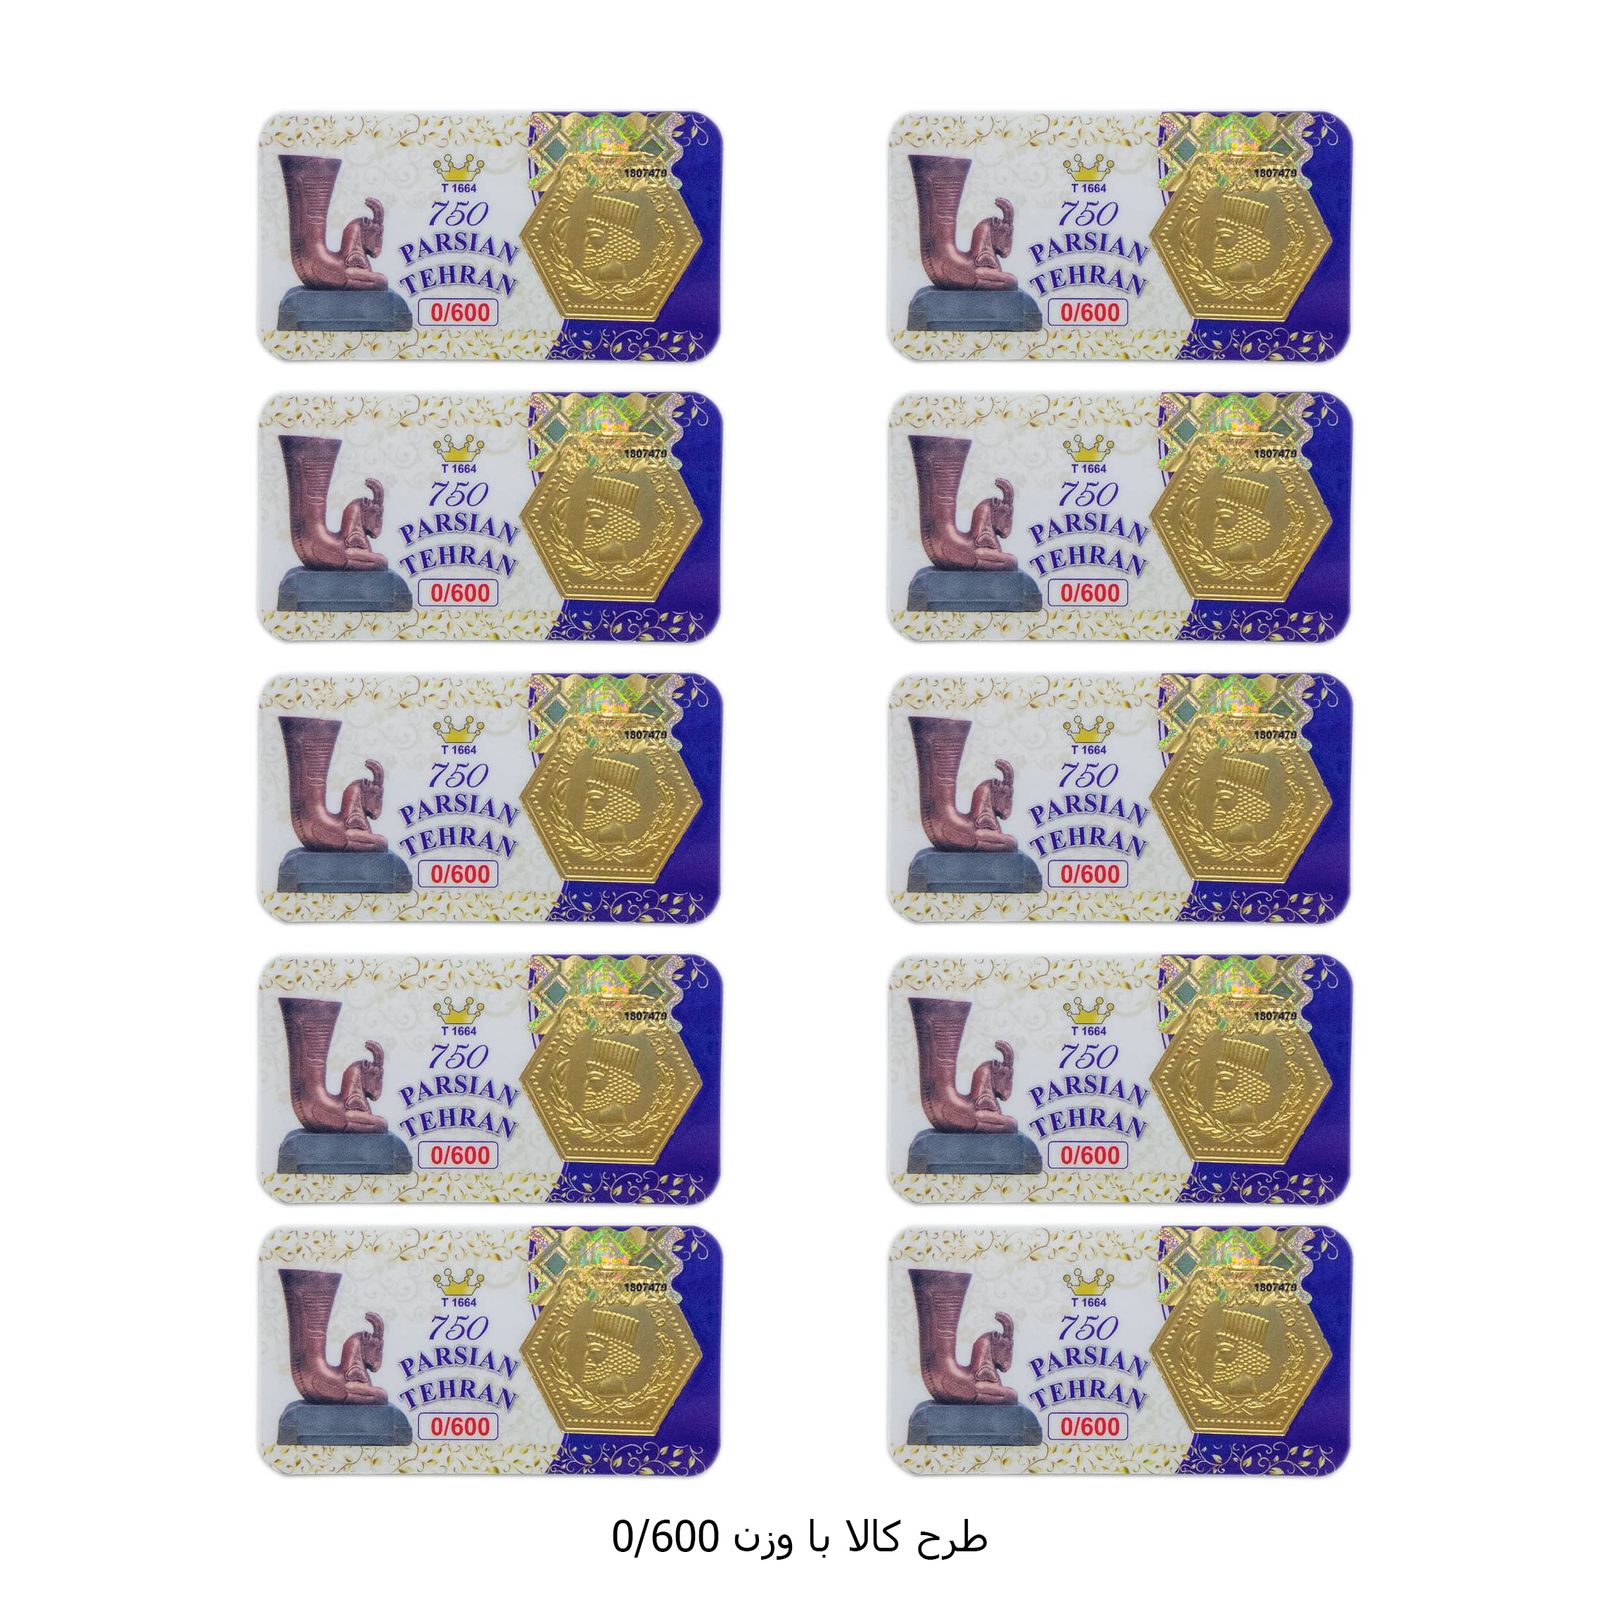 سکه گرمی طلا 18 عیار پارسیان تهران مدل K412 مجموعه 10 عددی -  - 13